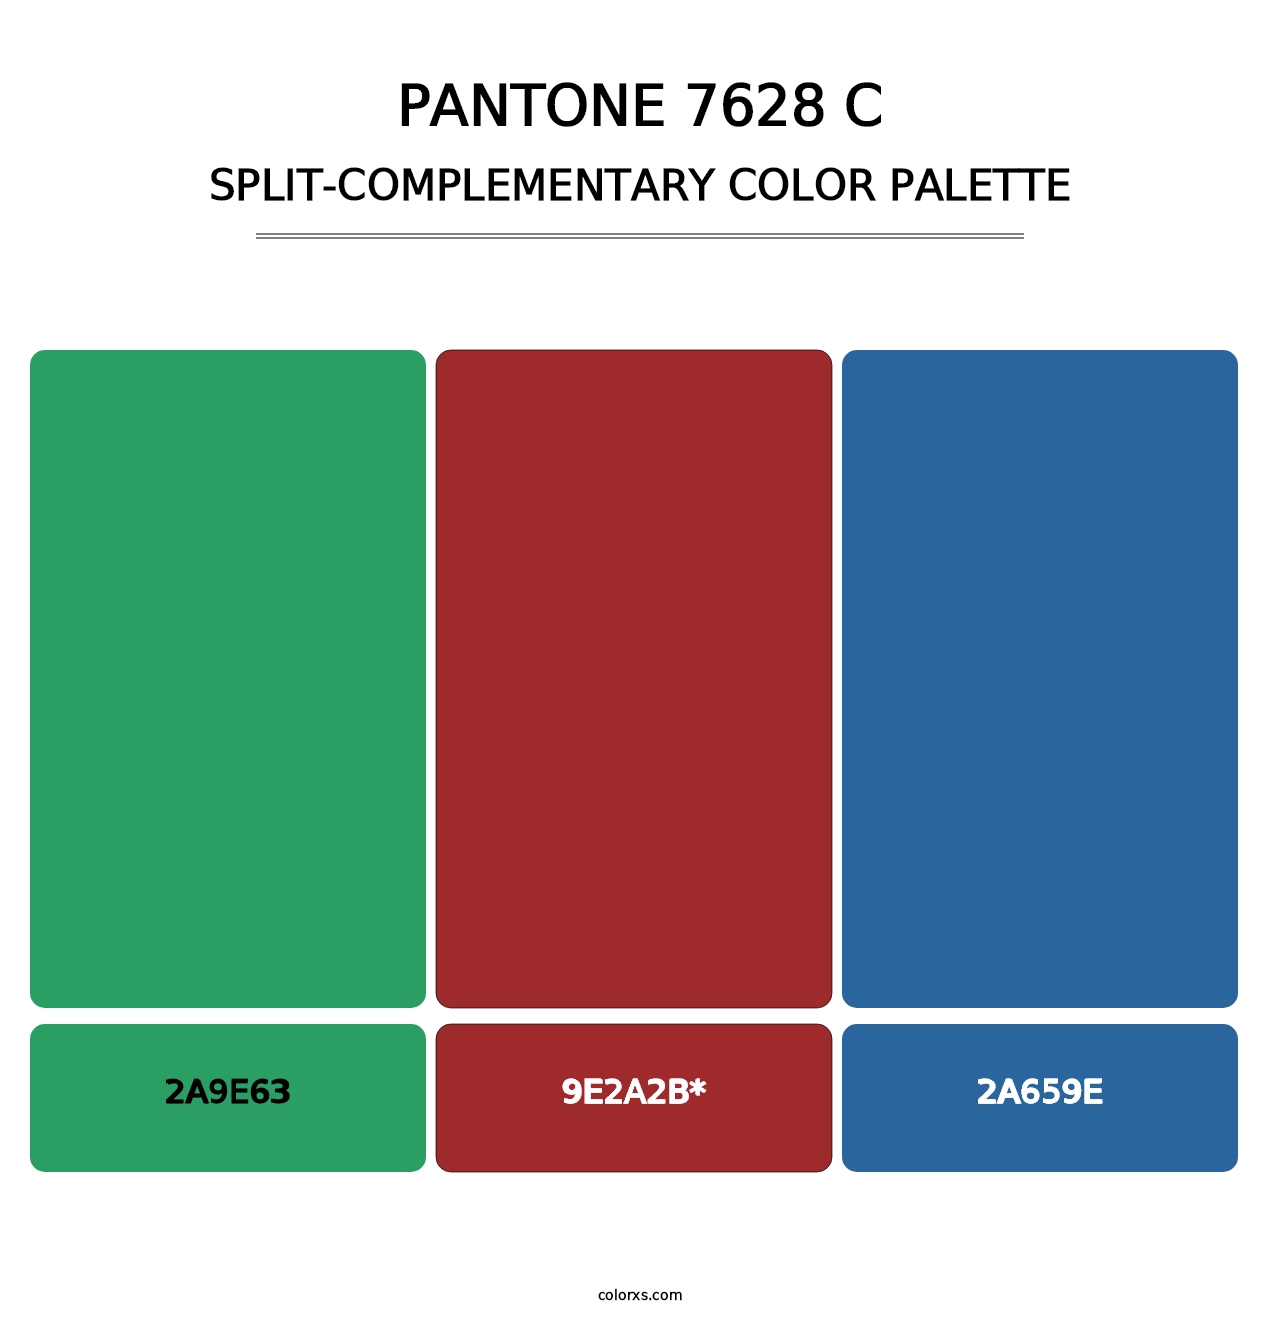 PANTONE 7628 C - Split-Complementary Color Palette